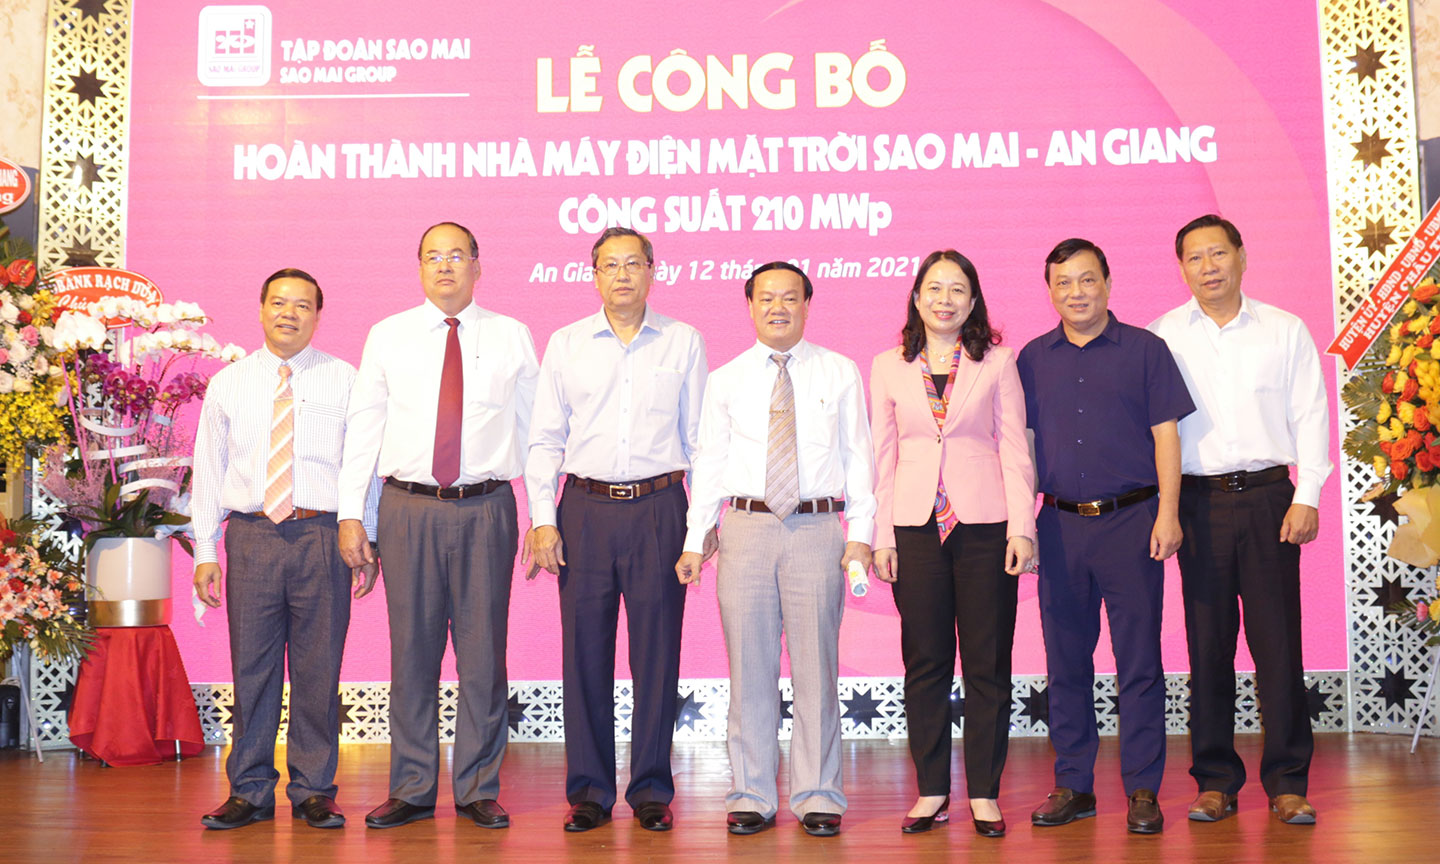 Lãnh đạo tỉnh An Giang cùng lãnh đạo Tập đoàn Sao Mai chính thức công bố hoàn thành Nhà máy điện mặt trời Sao Mai - An Giang hơn 6.000 tỷ đồng